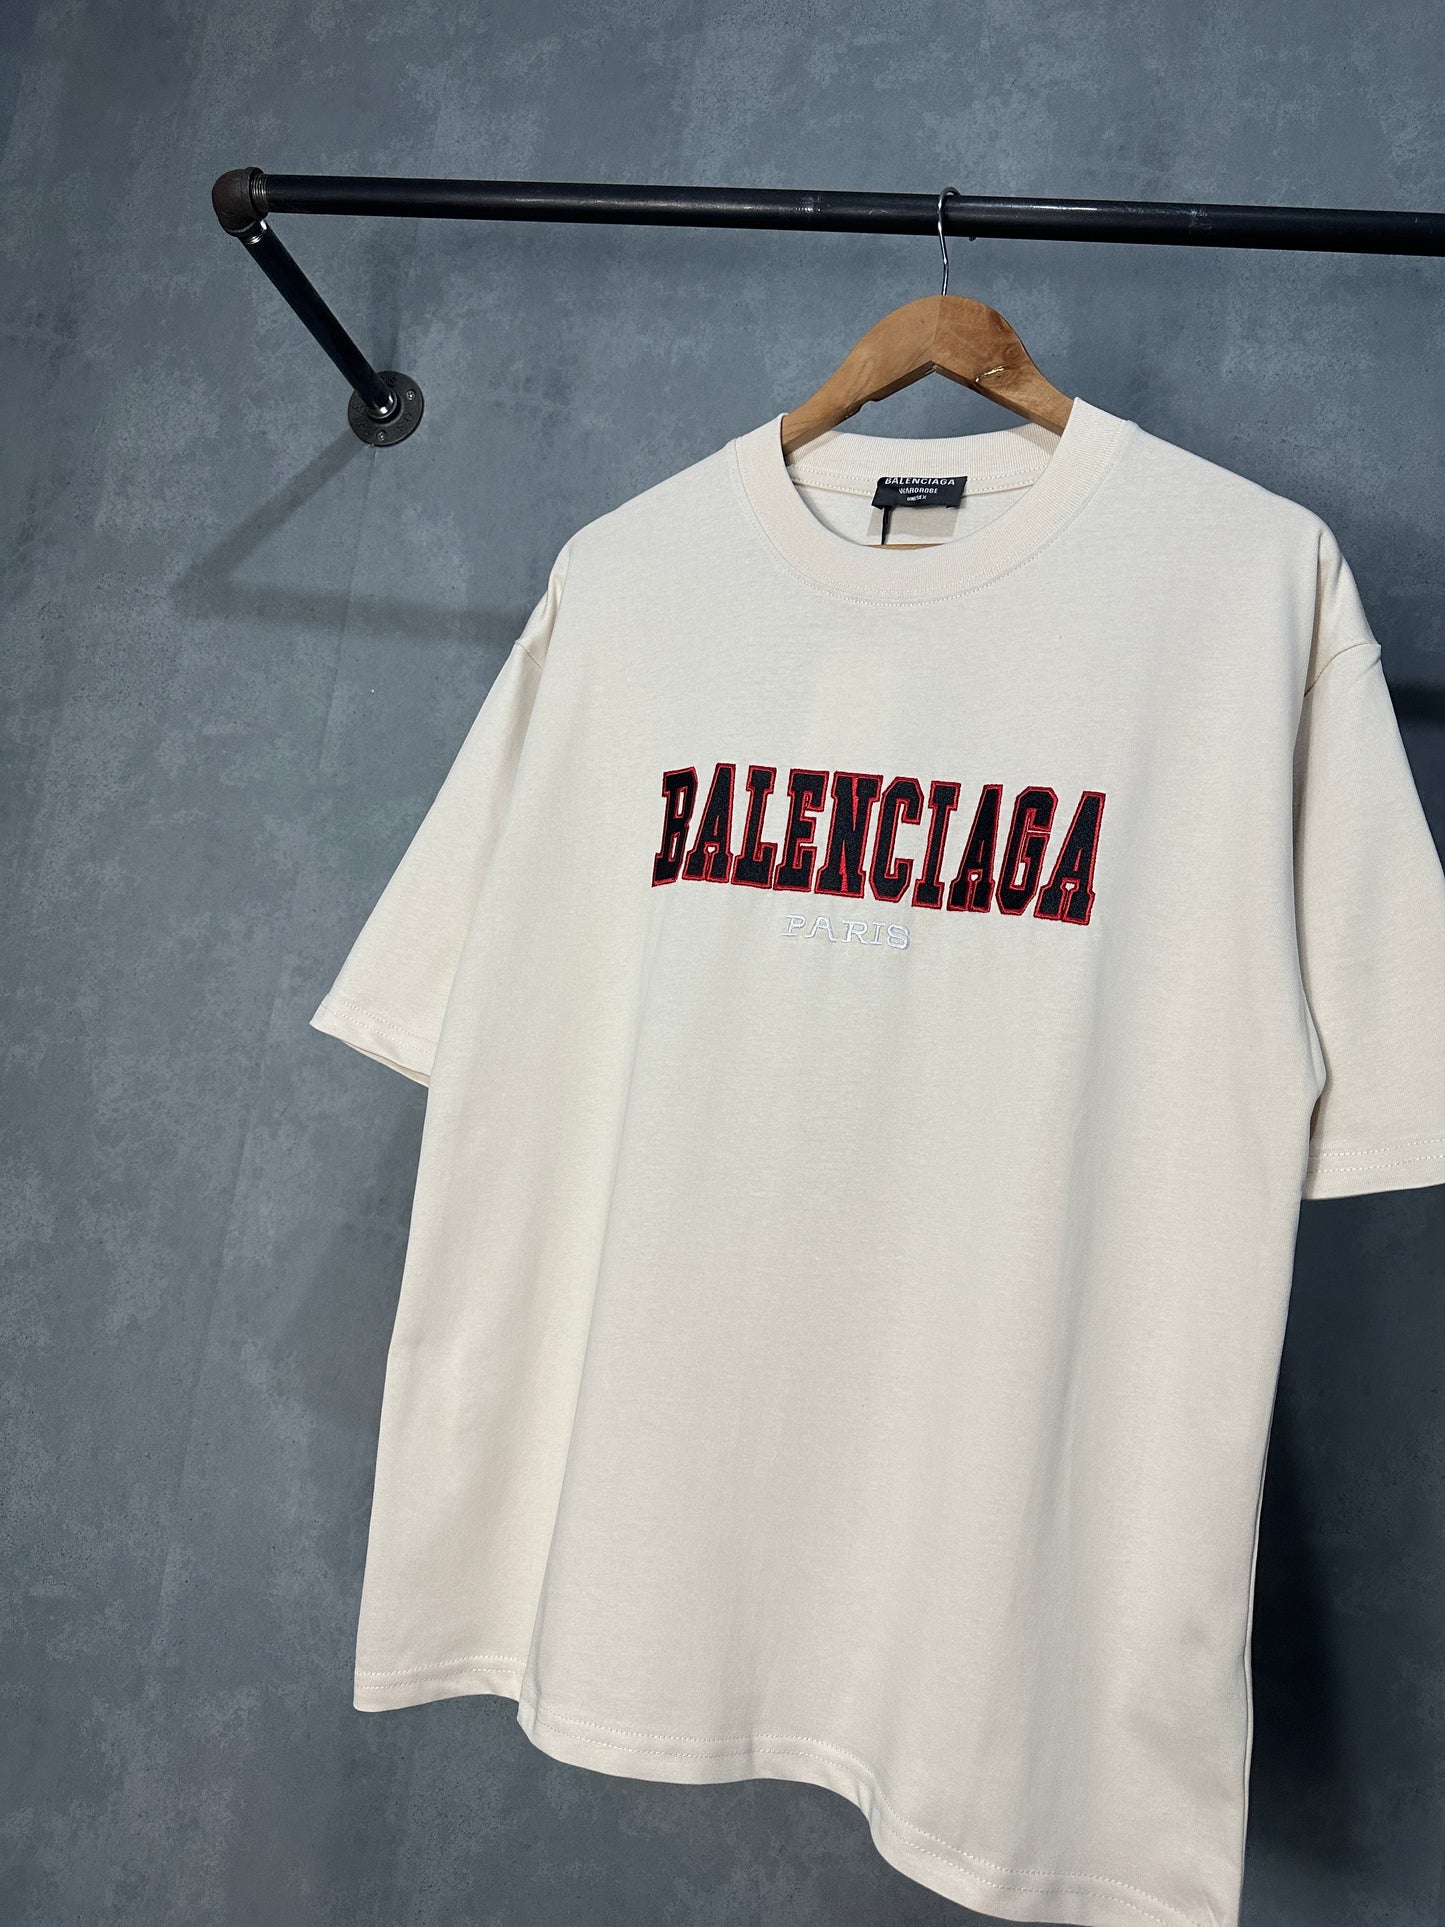 Balenciaga Paris T-Shirt (Cream)